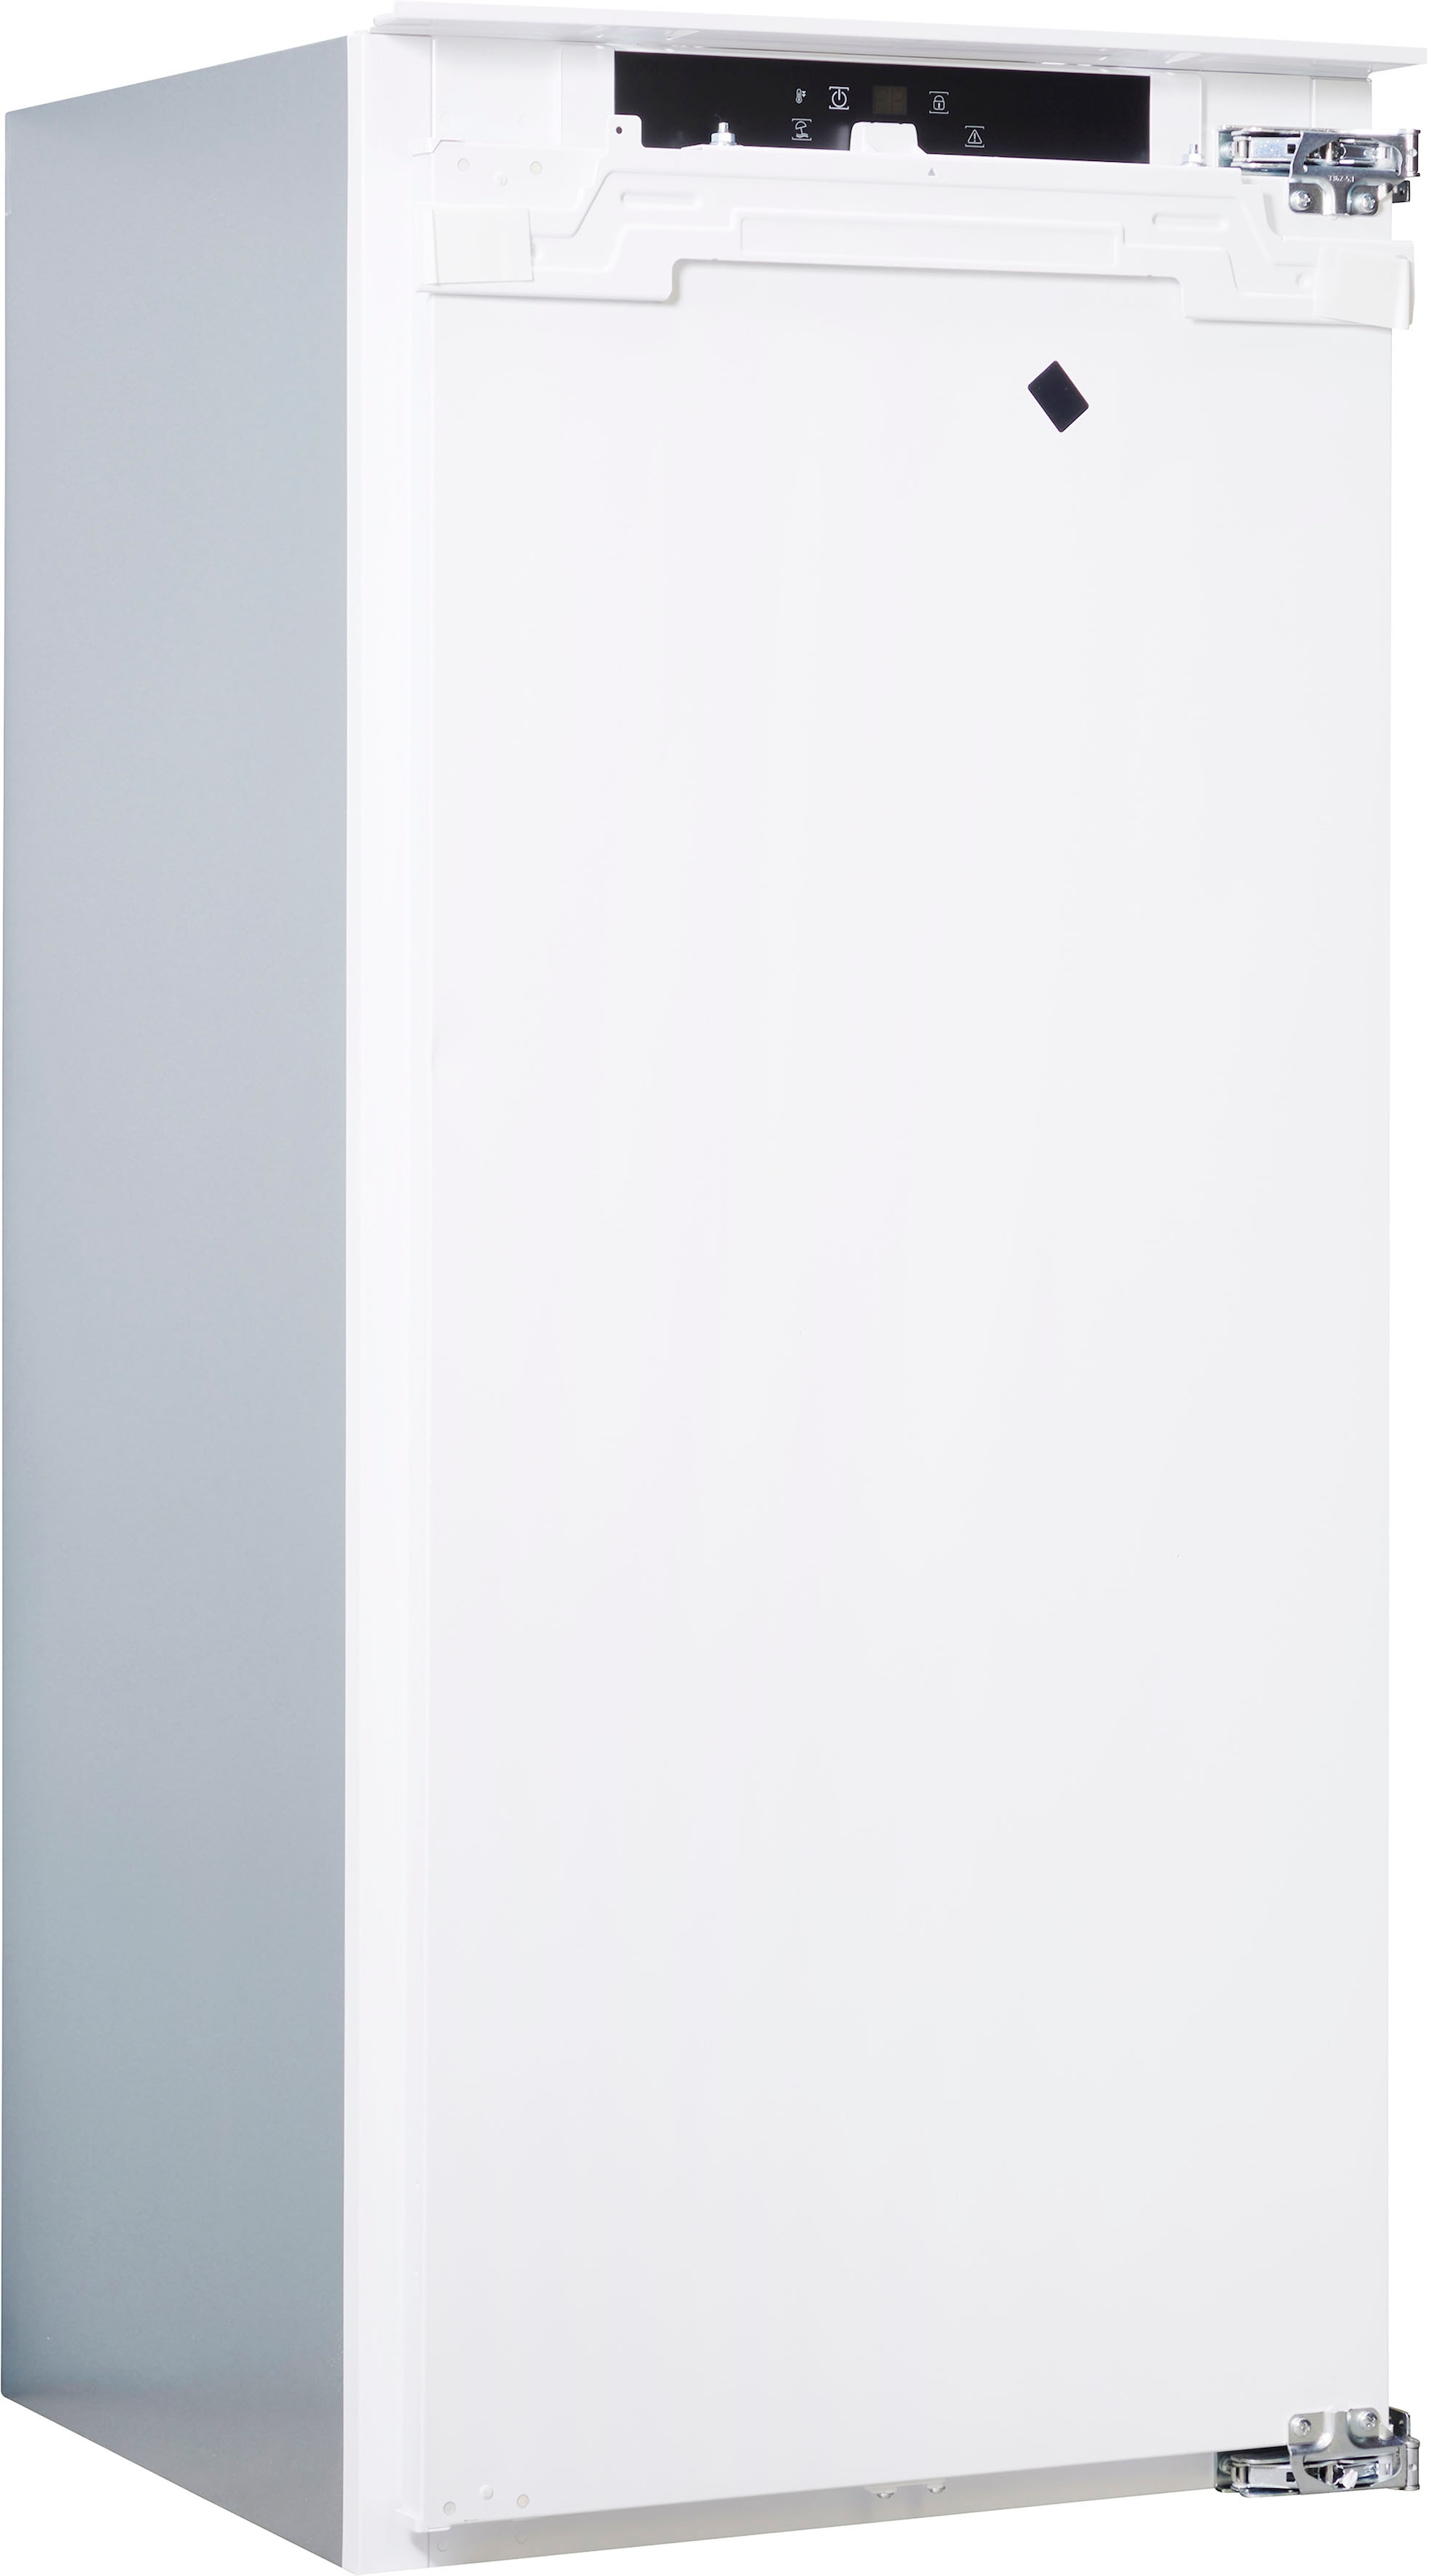 BAUKNECHT Einbaukühlschrank »KSI 12GF3«, KSI 12GF3, 122 cm hoch, 55,7 cm breit